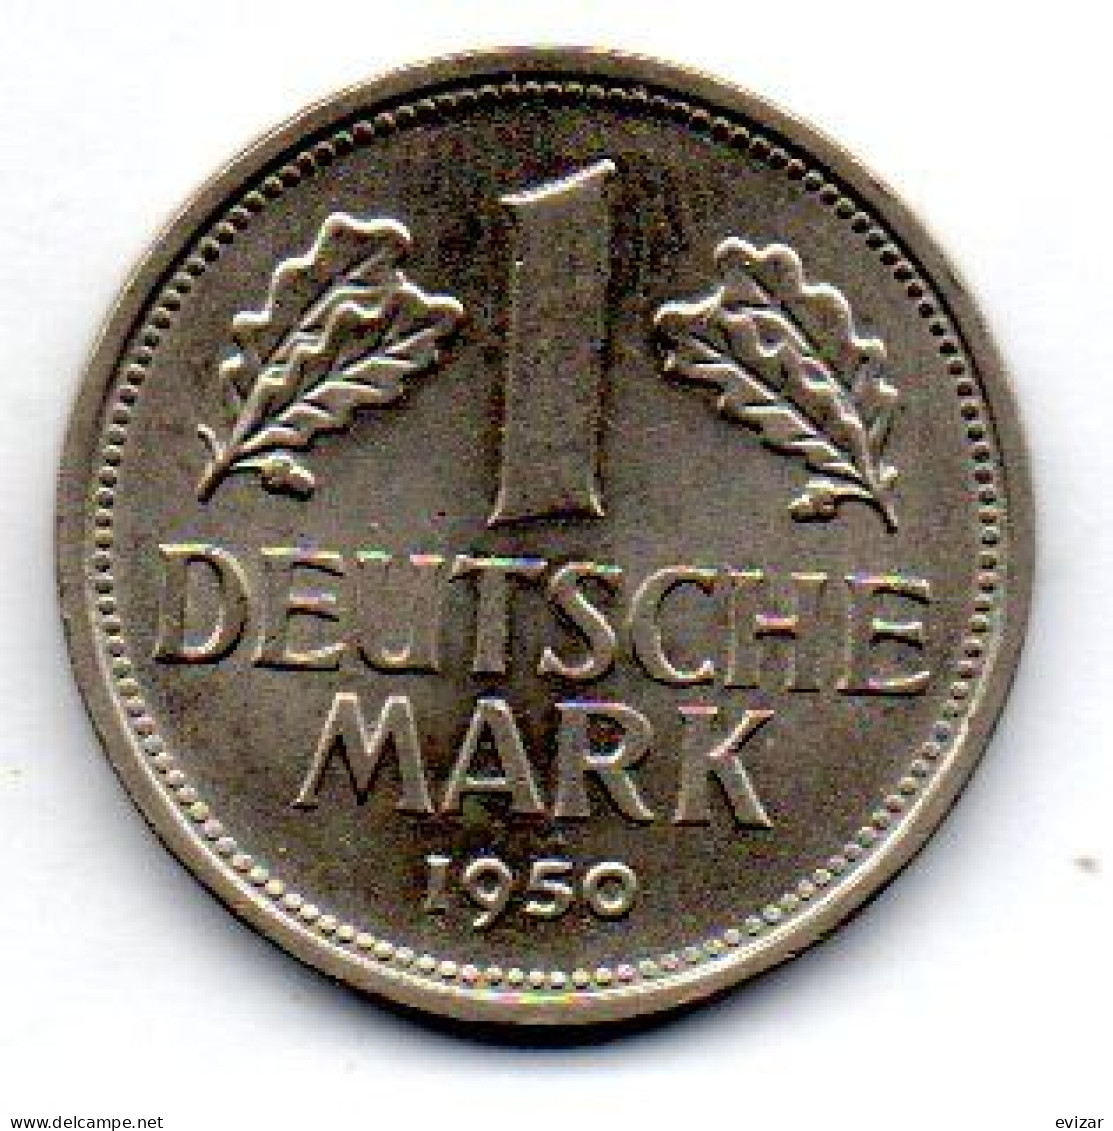 GERMANY - FEDERAL REPUBLIC, 1 Mark, Copper-Nickel, Year 1950-G, KM # 110 - 1 Marco